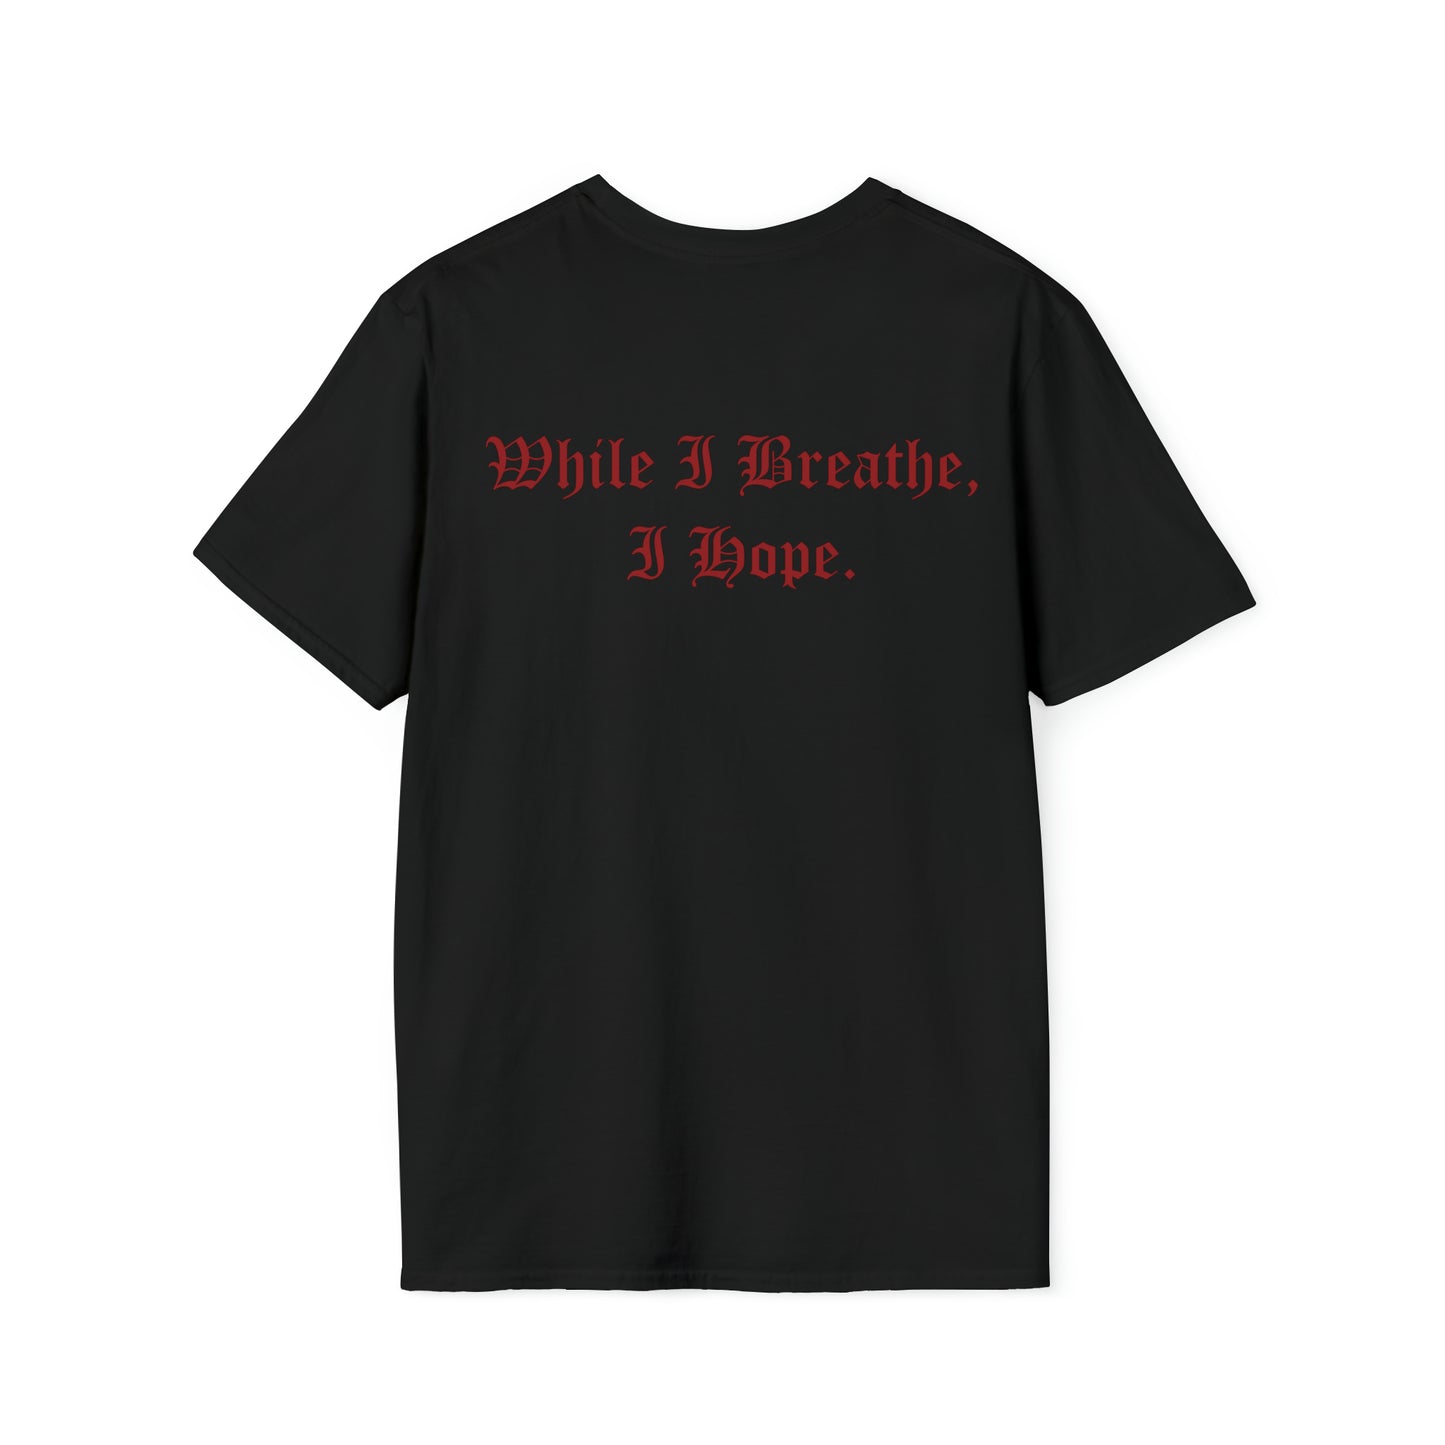 Dum Spiro Spero - While I Breathe, I Hope Softstyle T-Shirt